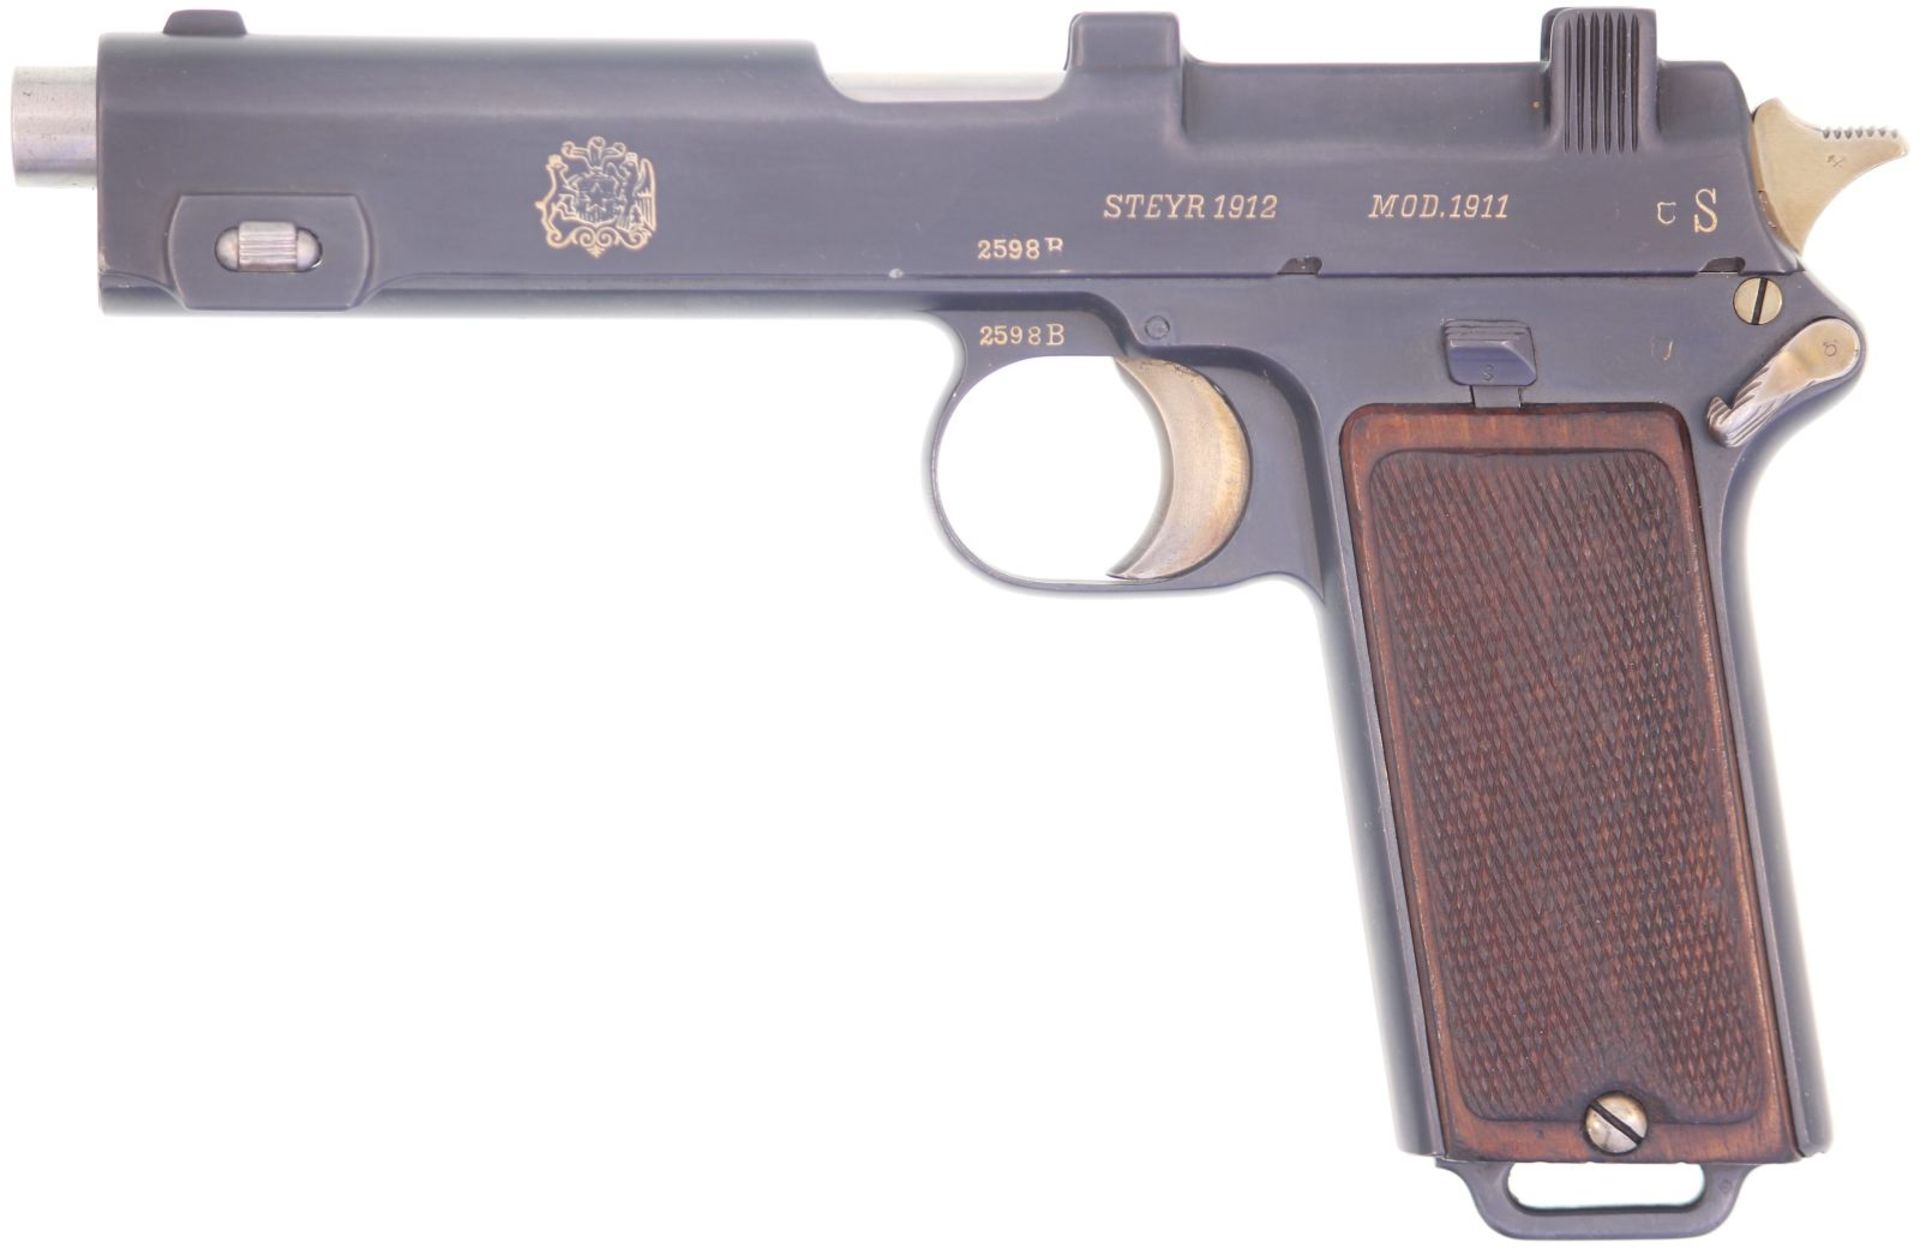 Pistole, Chilenische Ordonnanz, Steyr 1912 Mod. 1911, Kal. 9mmSteyr. Durch die Waffenfabrik Steyr